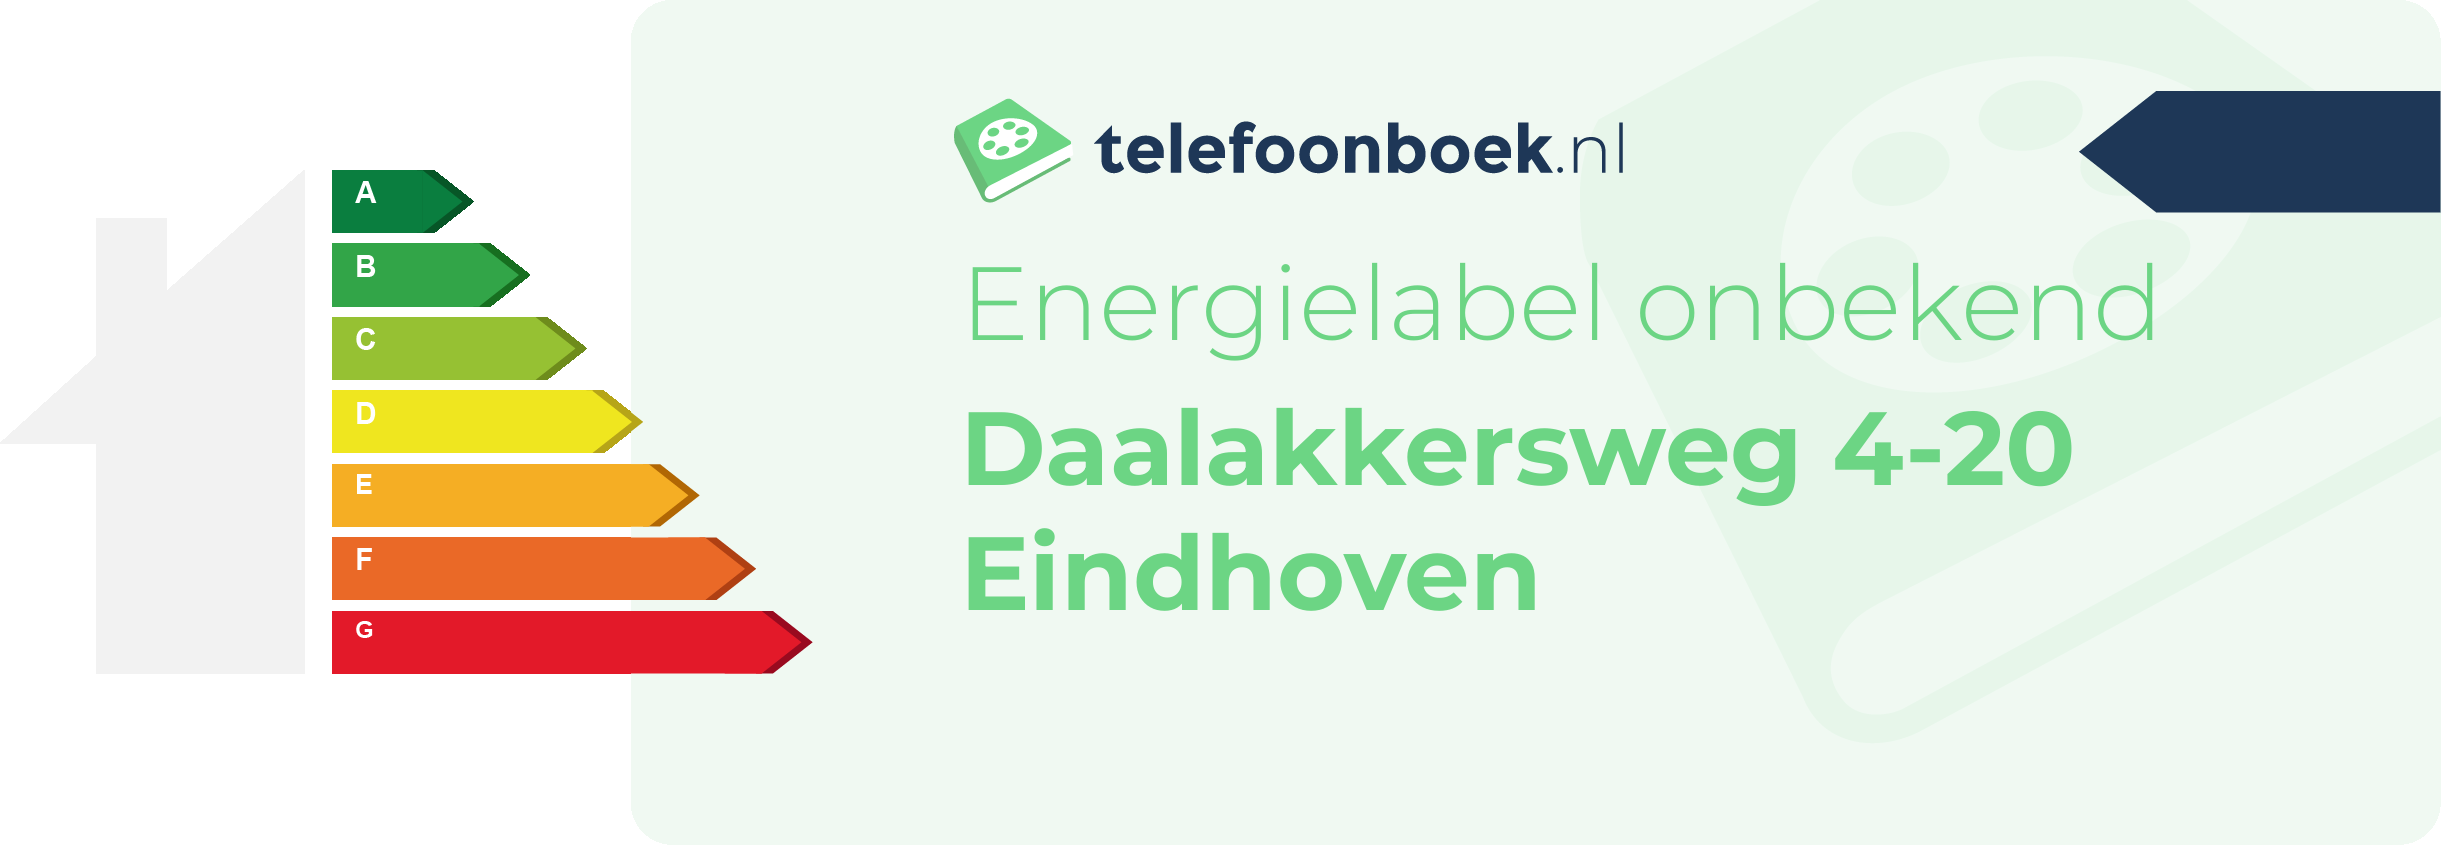 Energielabel Daalakkersweg 4-20 Eindhoven